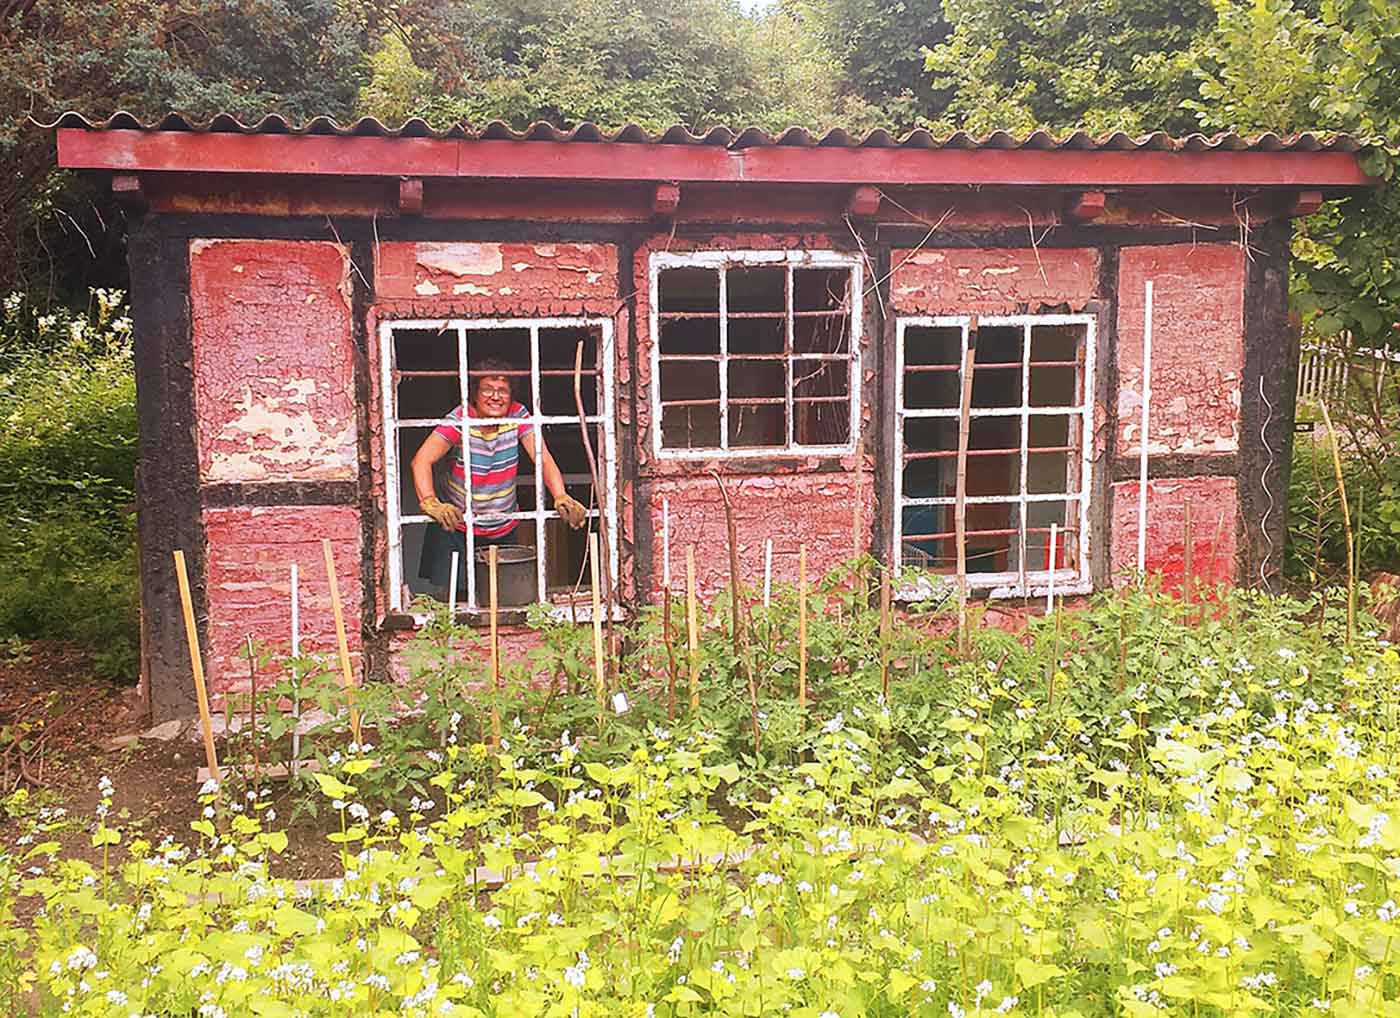 alter Gänsestall mit wildbewachsener Wiese davor - 3 Fenster, hinter dem linken Fenster ist eine Person im Stall sichtbar.